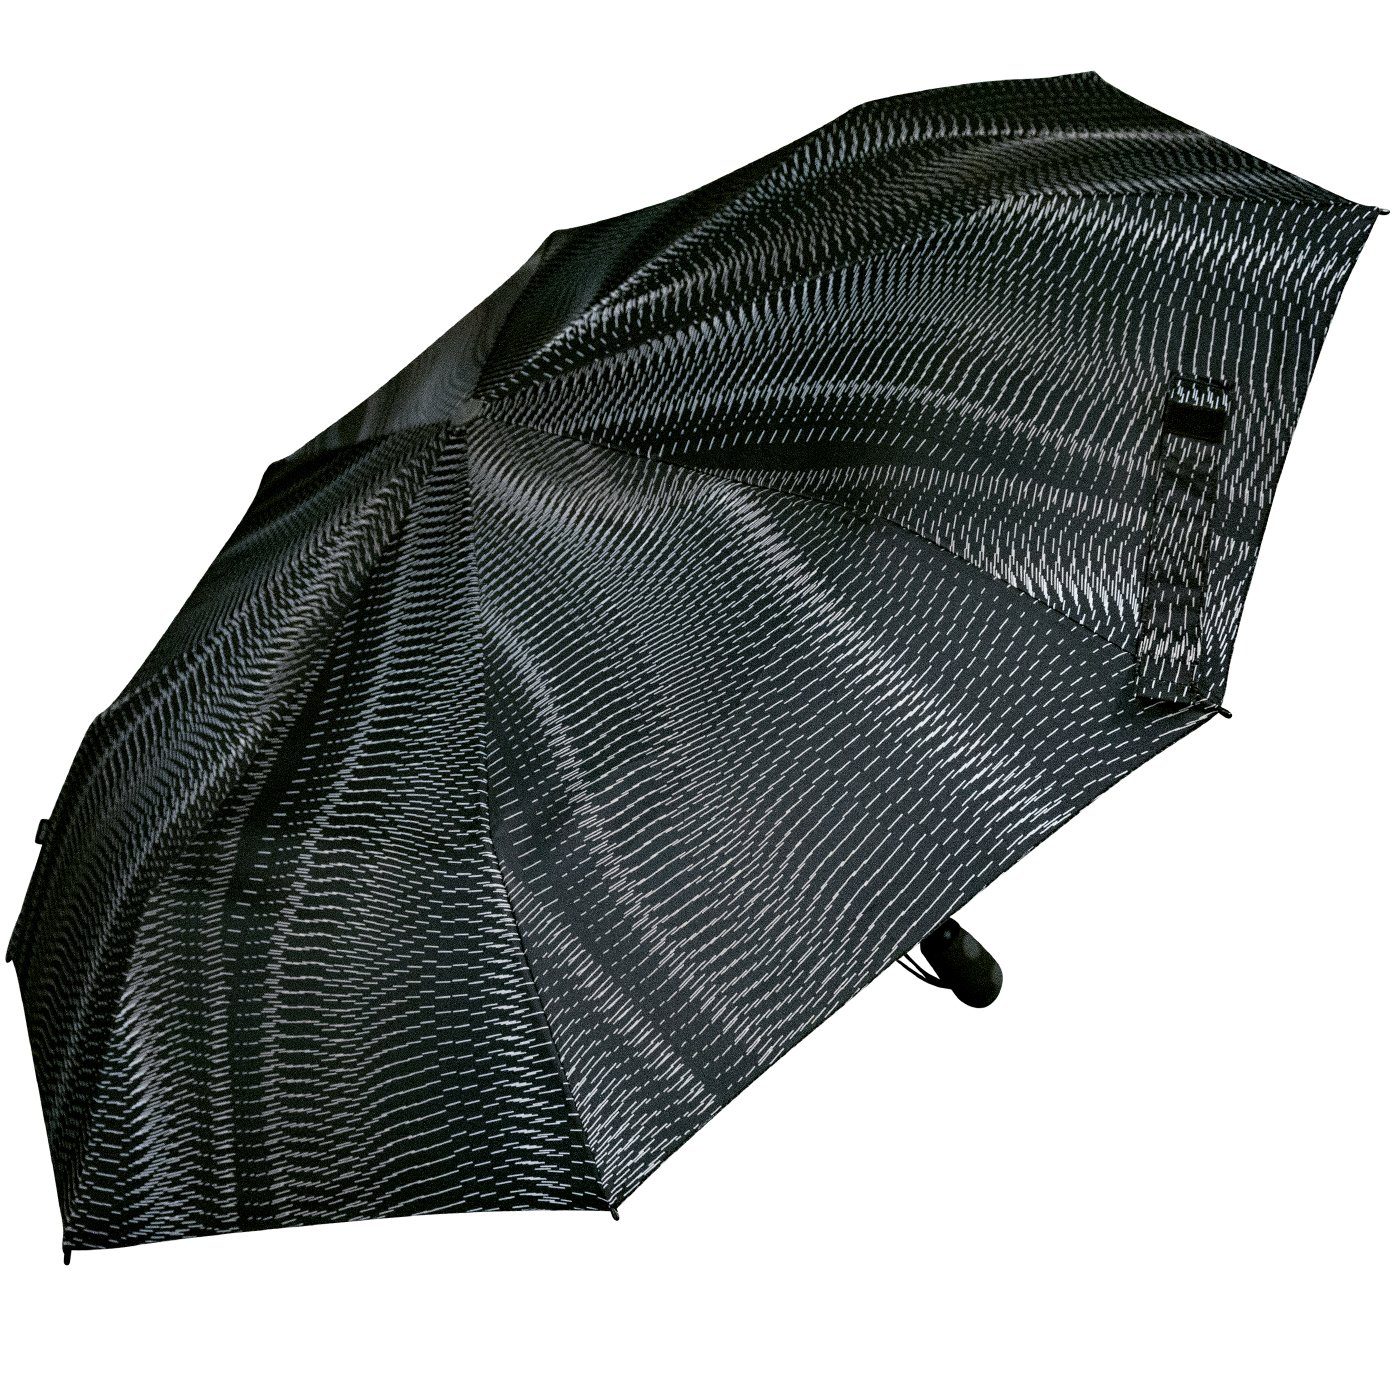 - Sound Schirm Duomatic mit E.200 Taschenregenschirm moon Knirps® schwarz-beige mit Damen Auf-Zu-Automatik, Linien-Muster